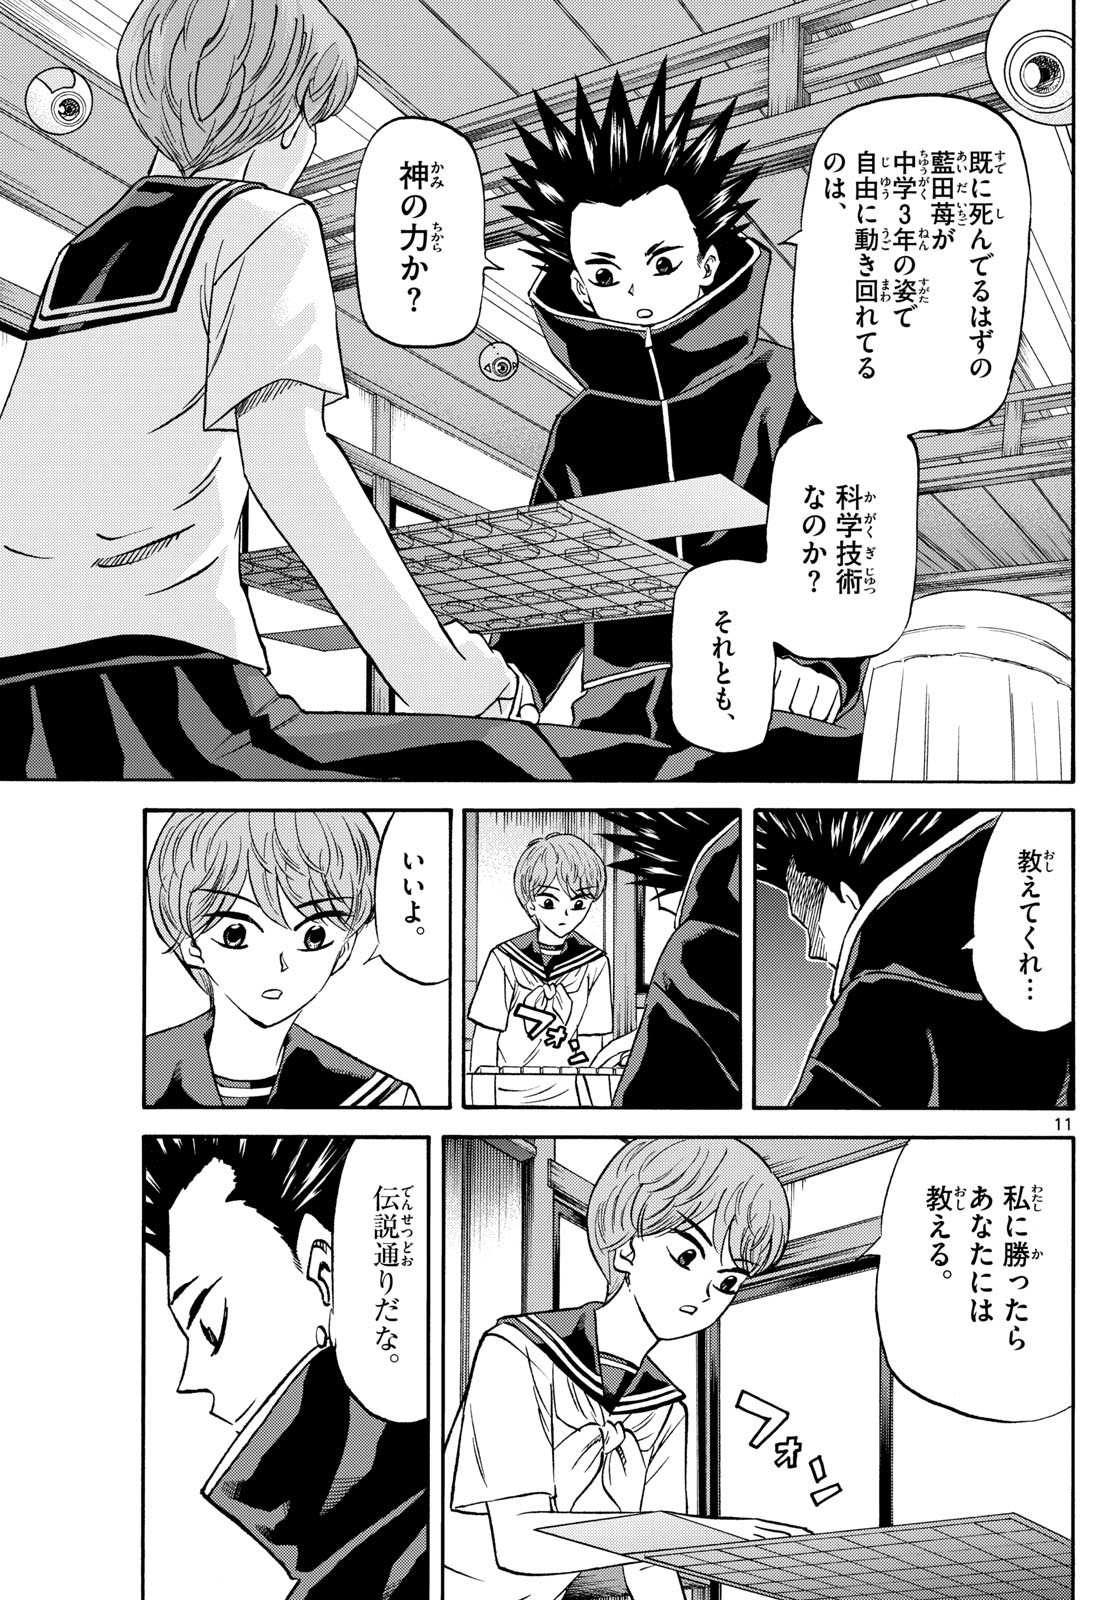 Tatsu to Ichigo - Chapter 191 - Page 11